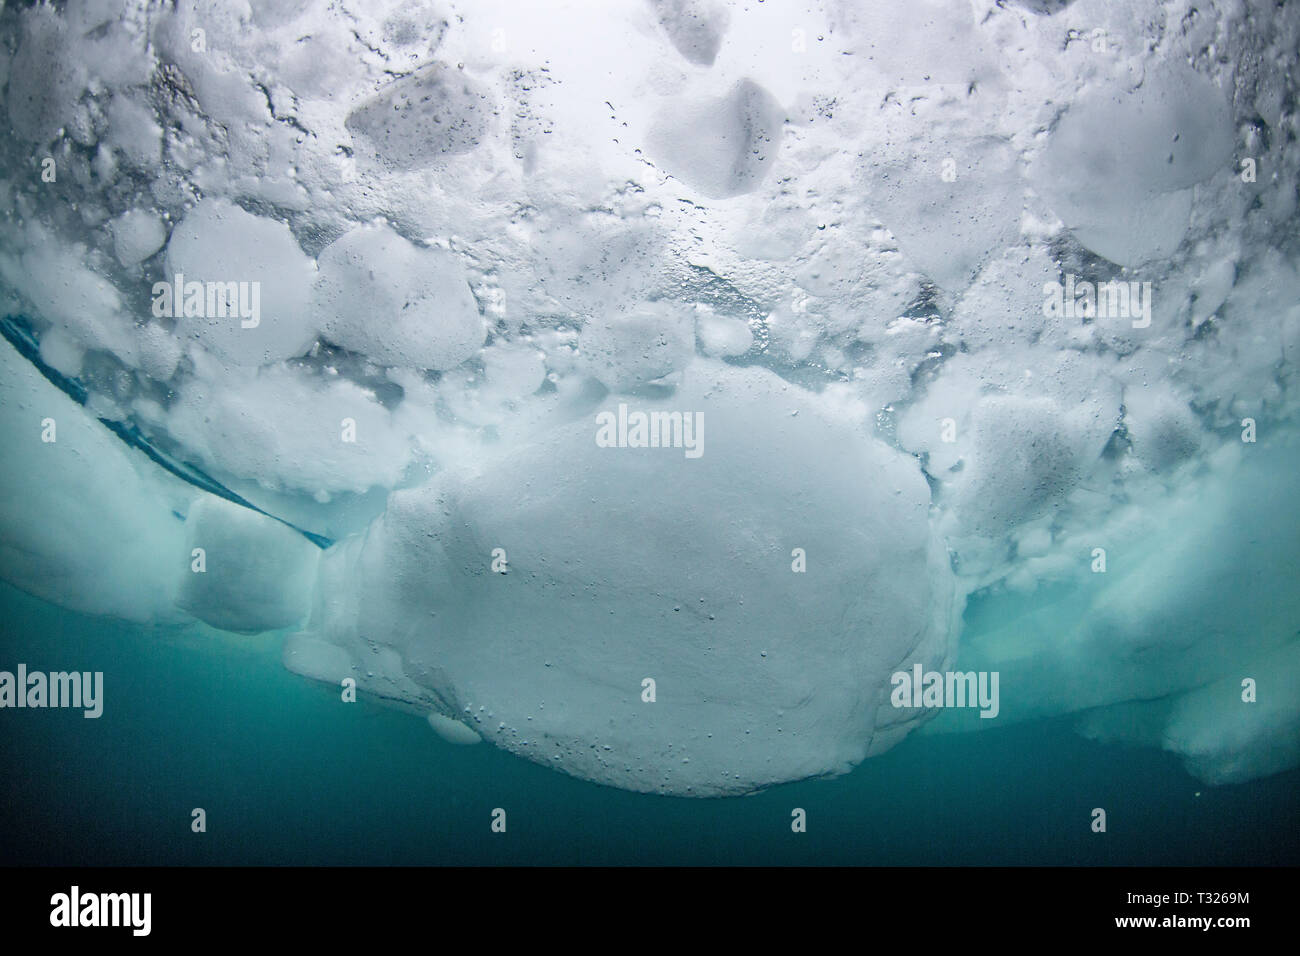 Blocs de glace sous l'eau, l'océan Arctique, Spitzberg, Norvège Banque D'Images